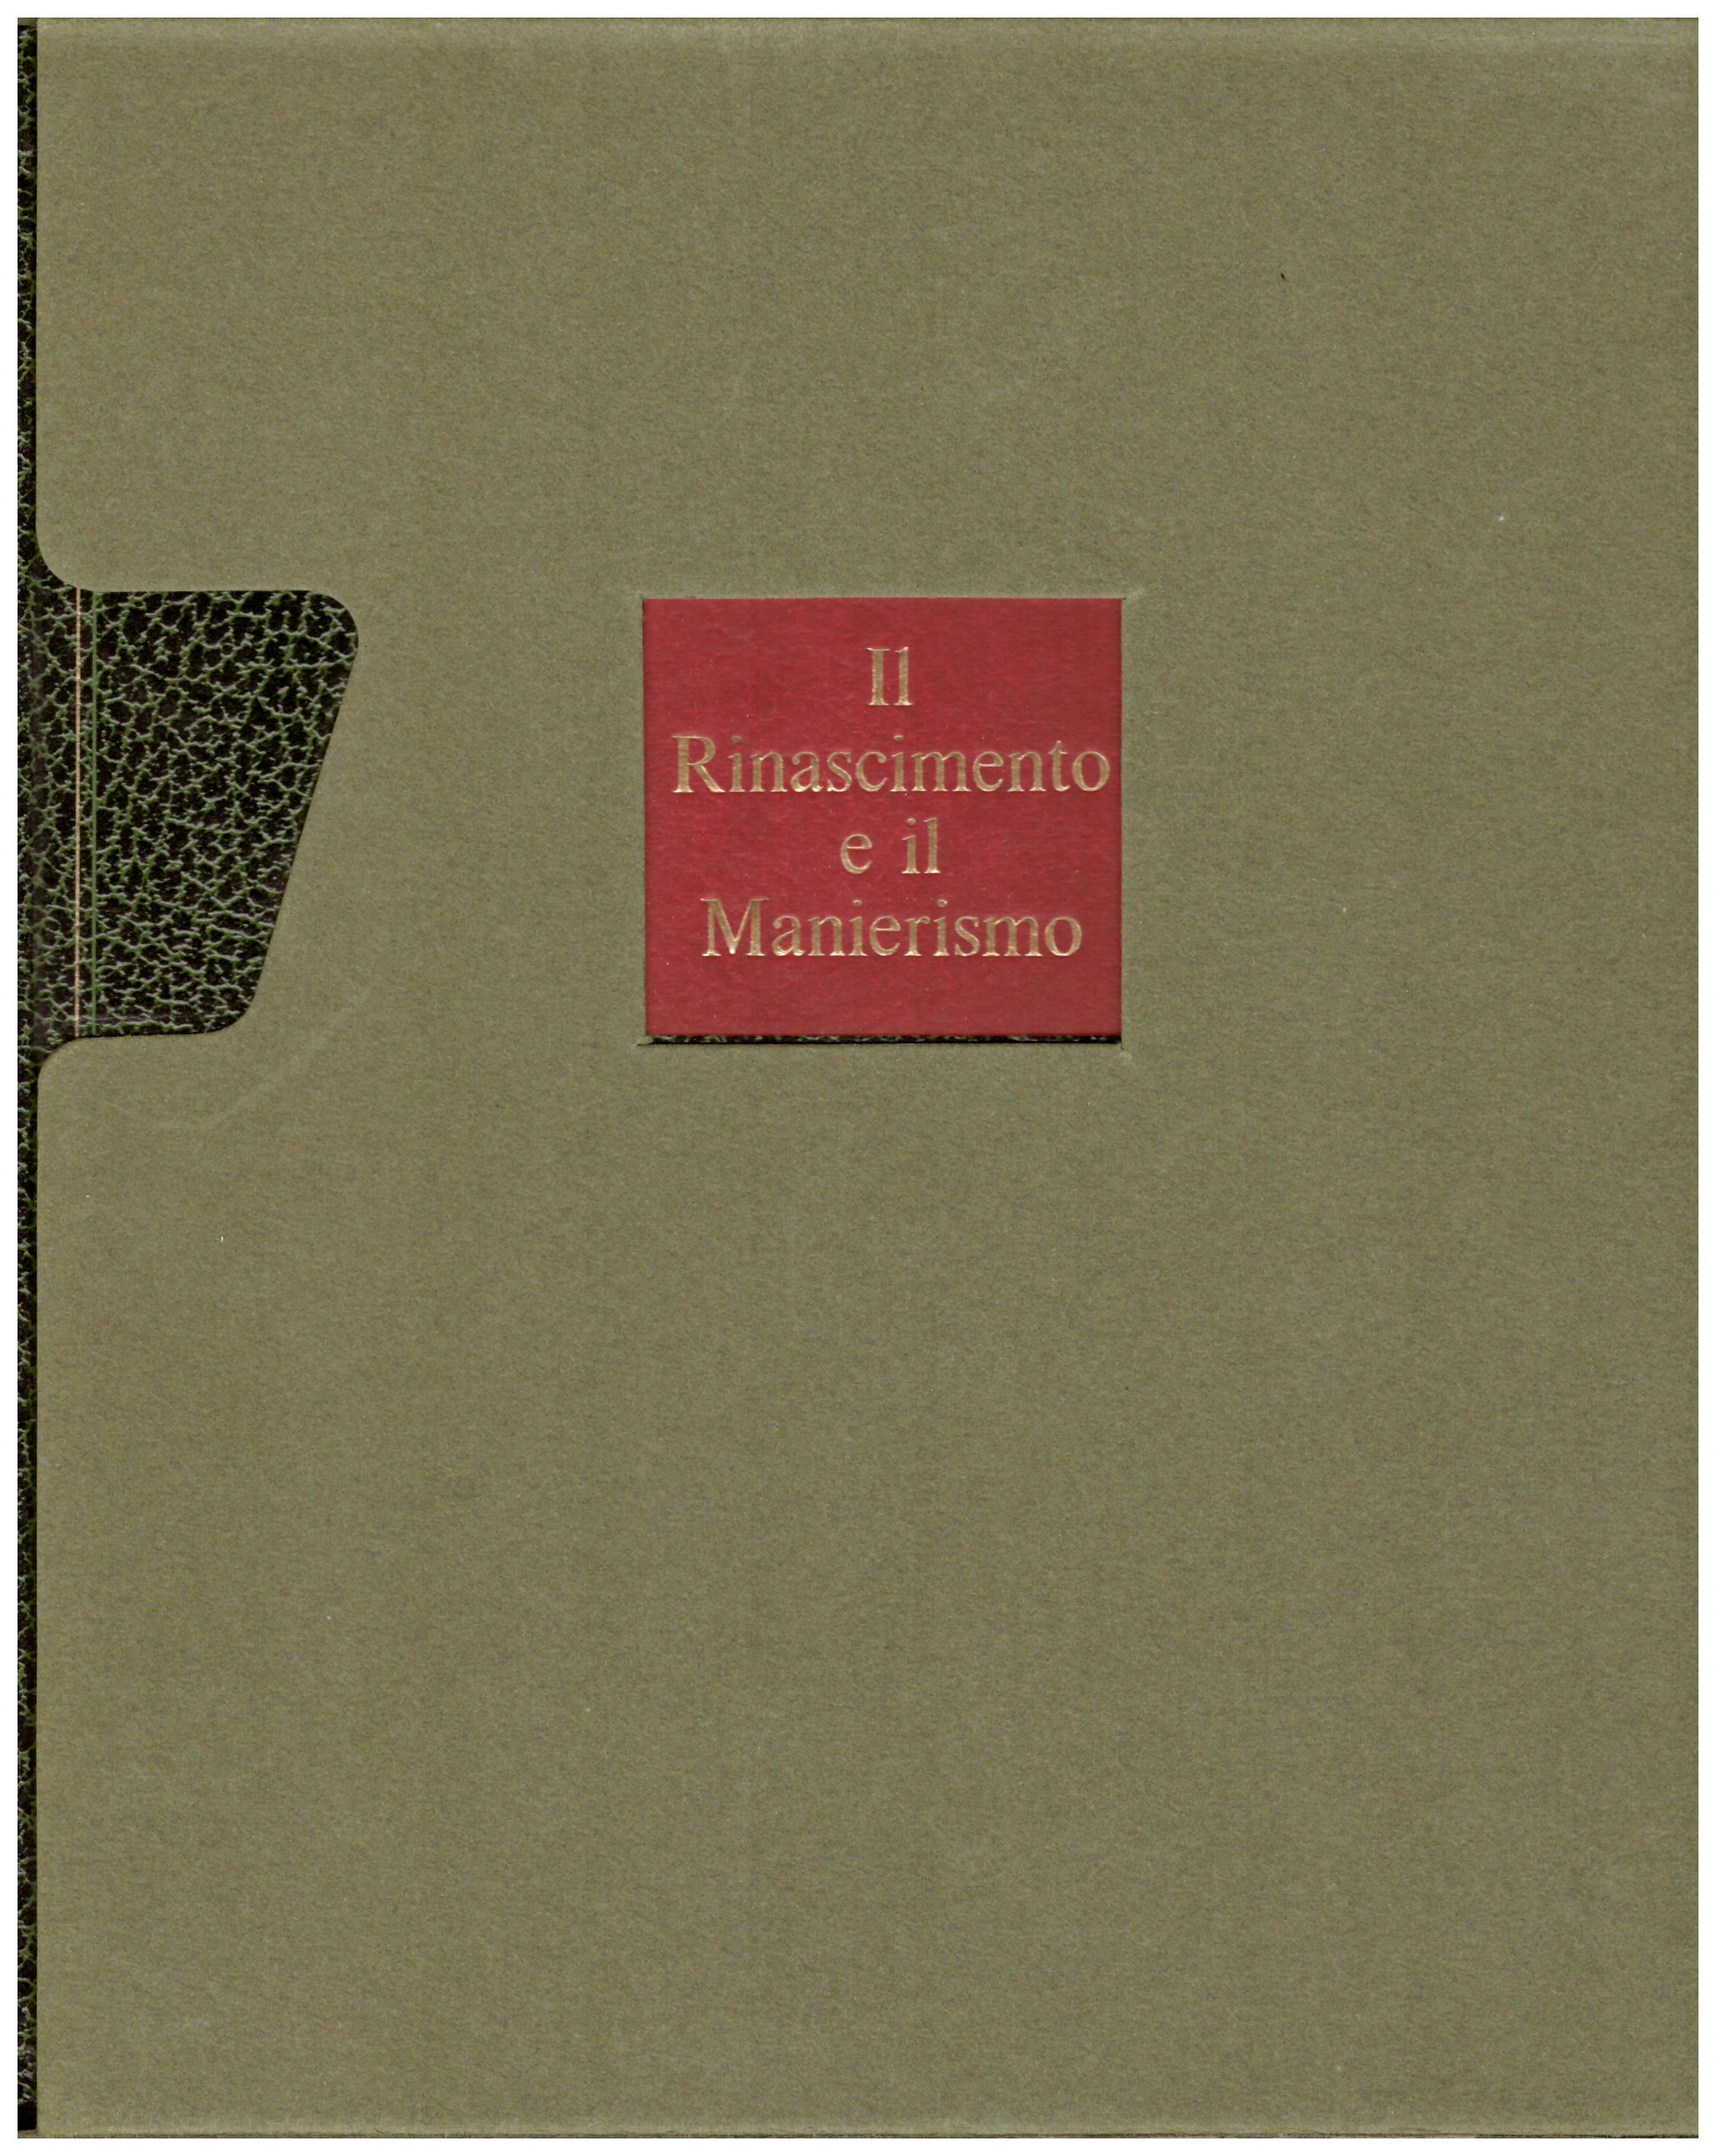 Titolo: L'arte nel mondo n.14 Il Rinascimento e il Manierismo Autore: Robert E, Wolf, Ronald Millen Editore: Rizzoli, 1970